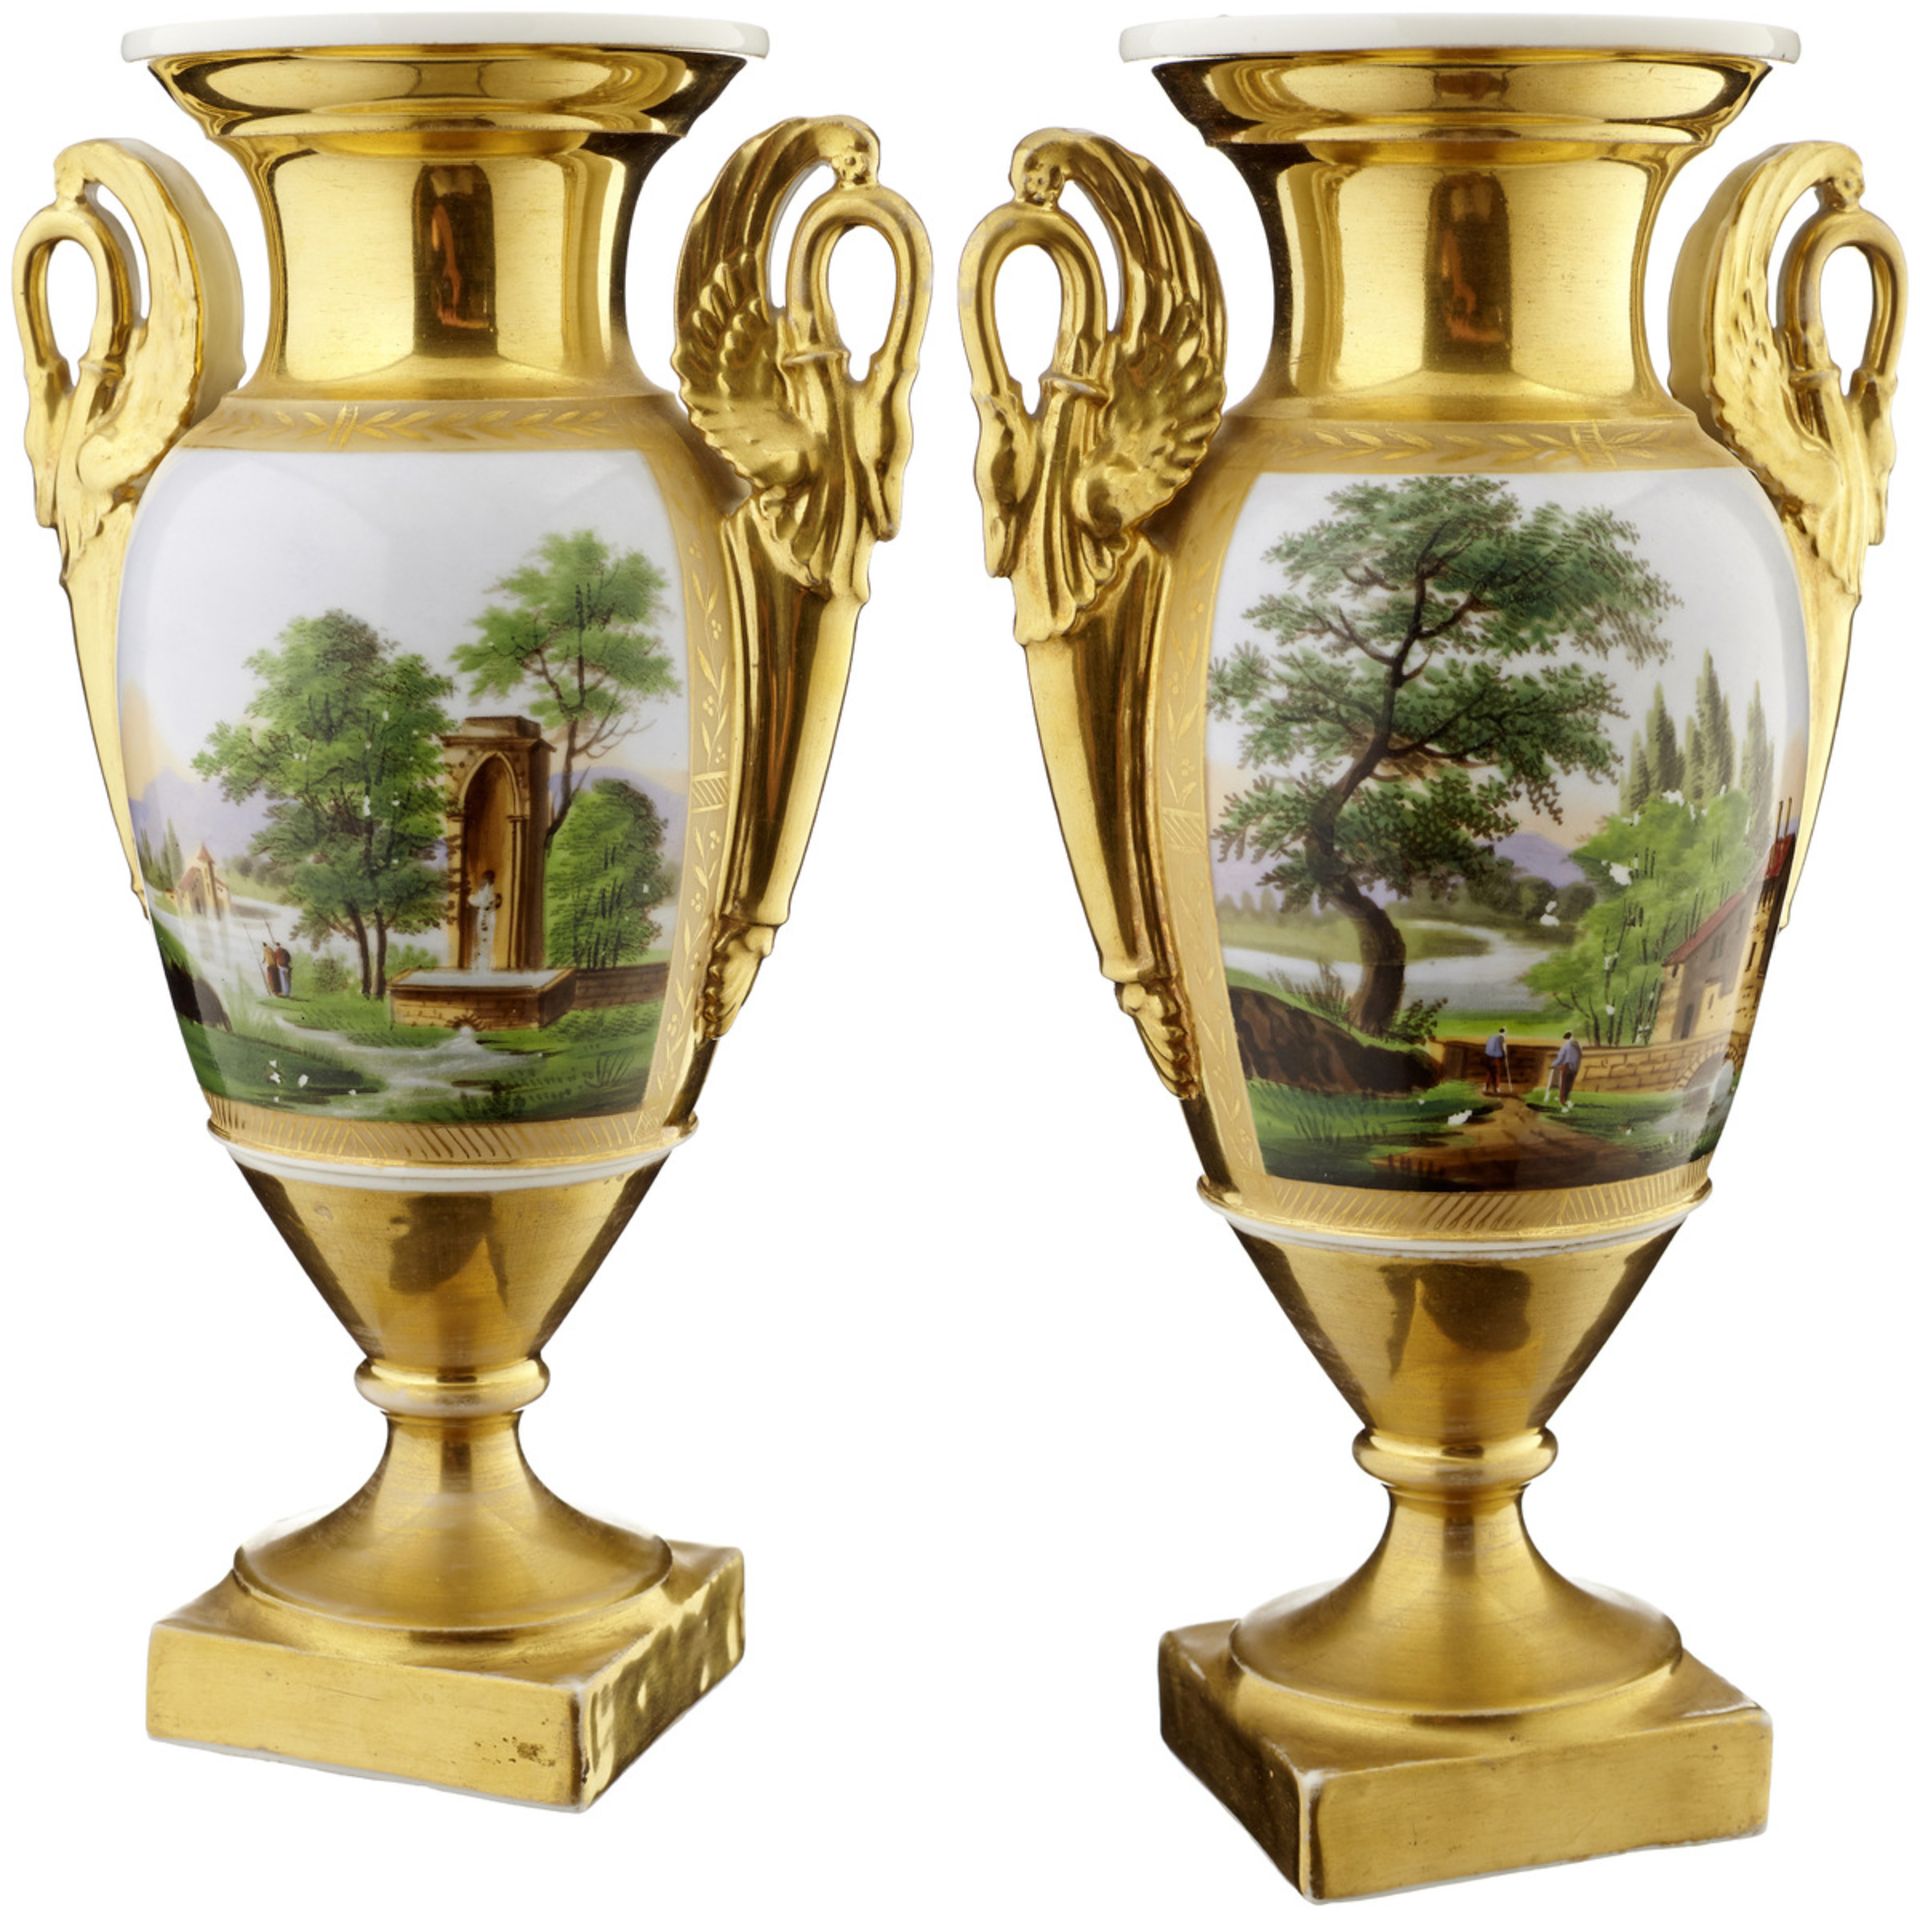 Paar ZiervasenParis, um 1820. Porzellanvasen mit reicher Vergoldung. In Reserven polychrome